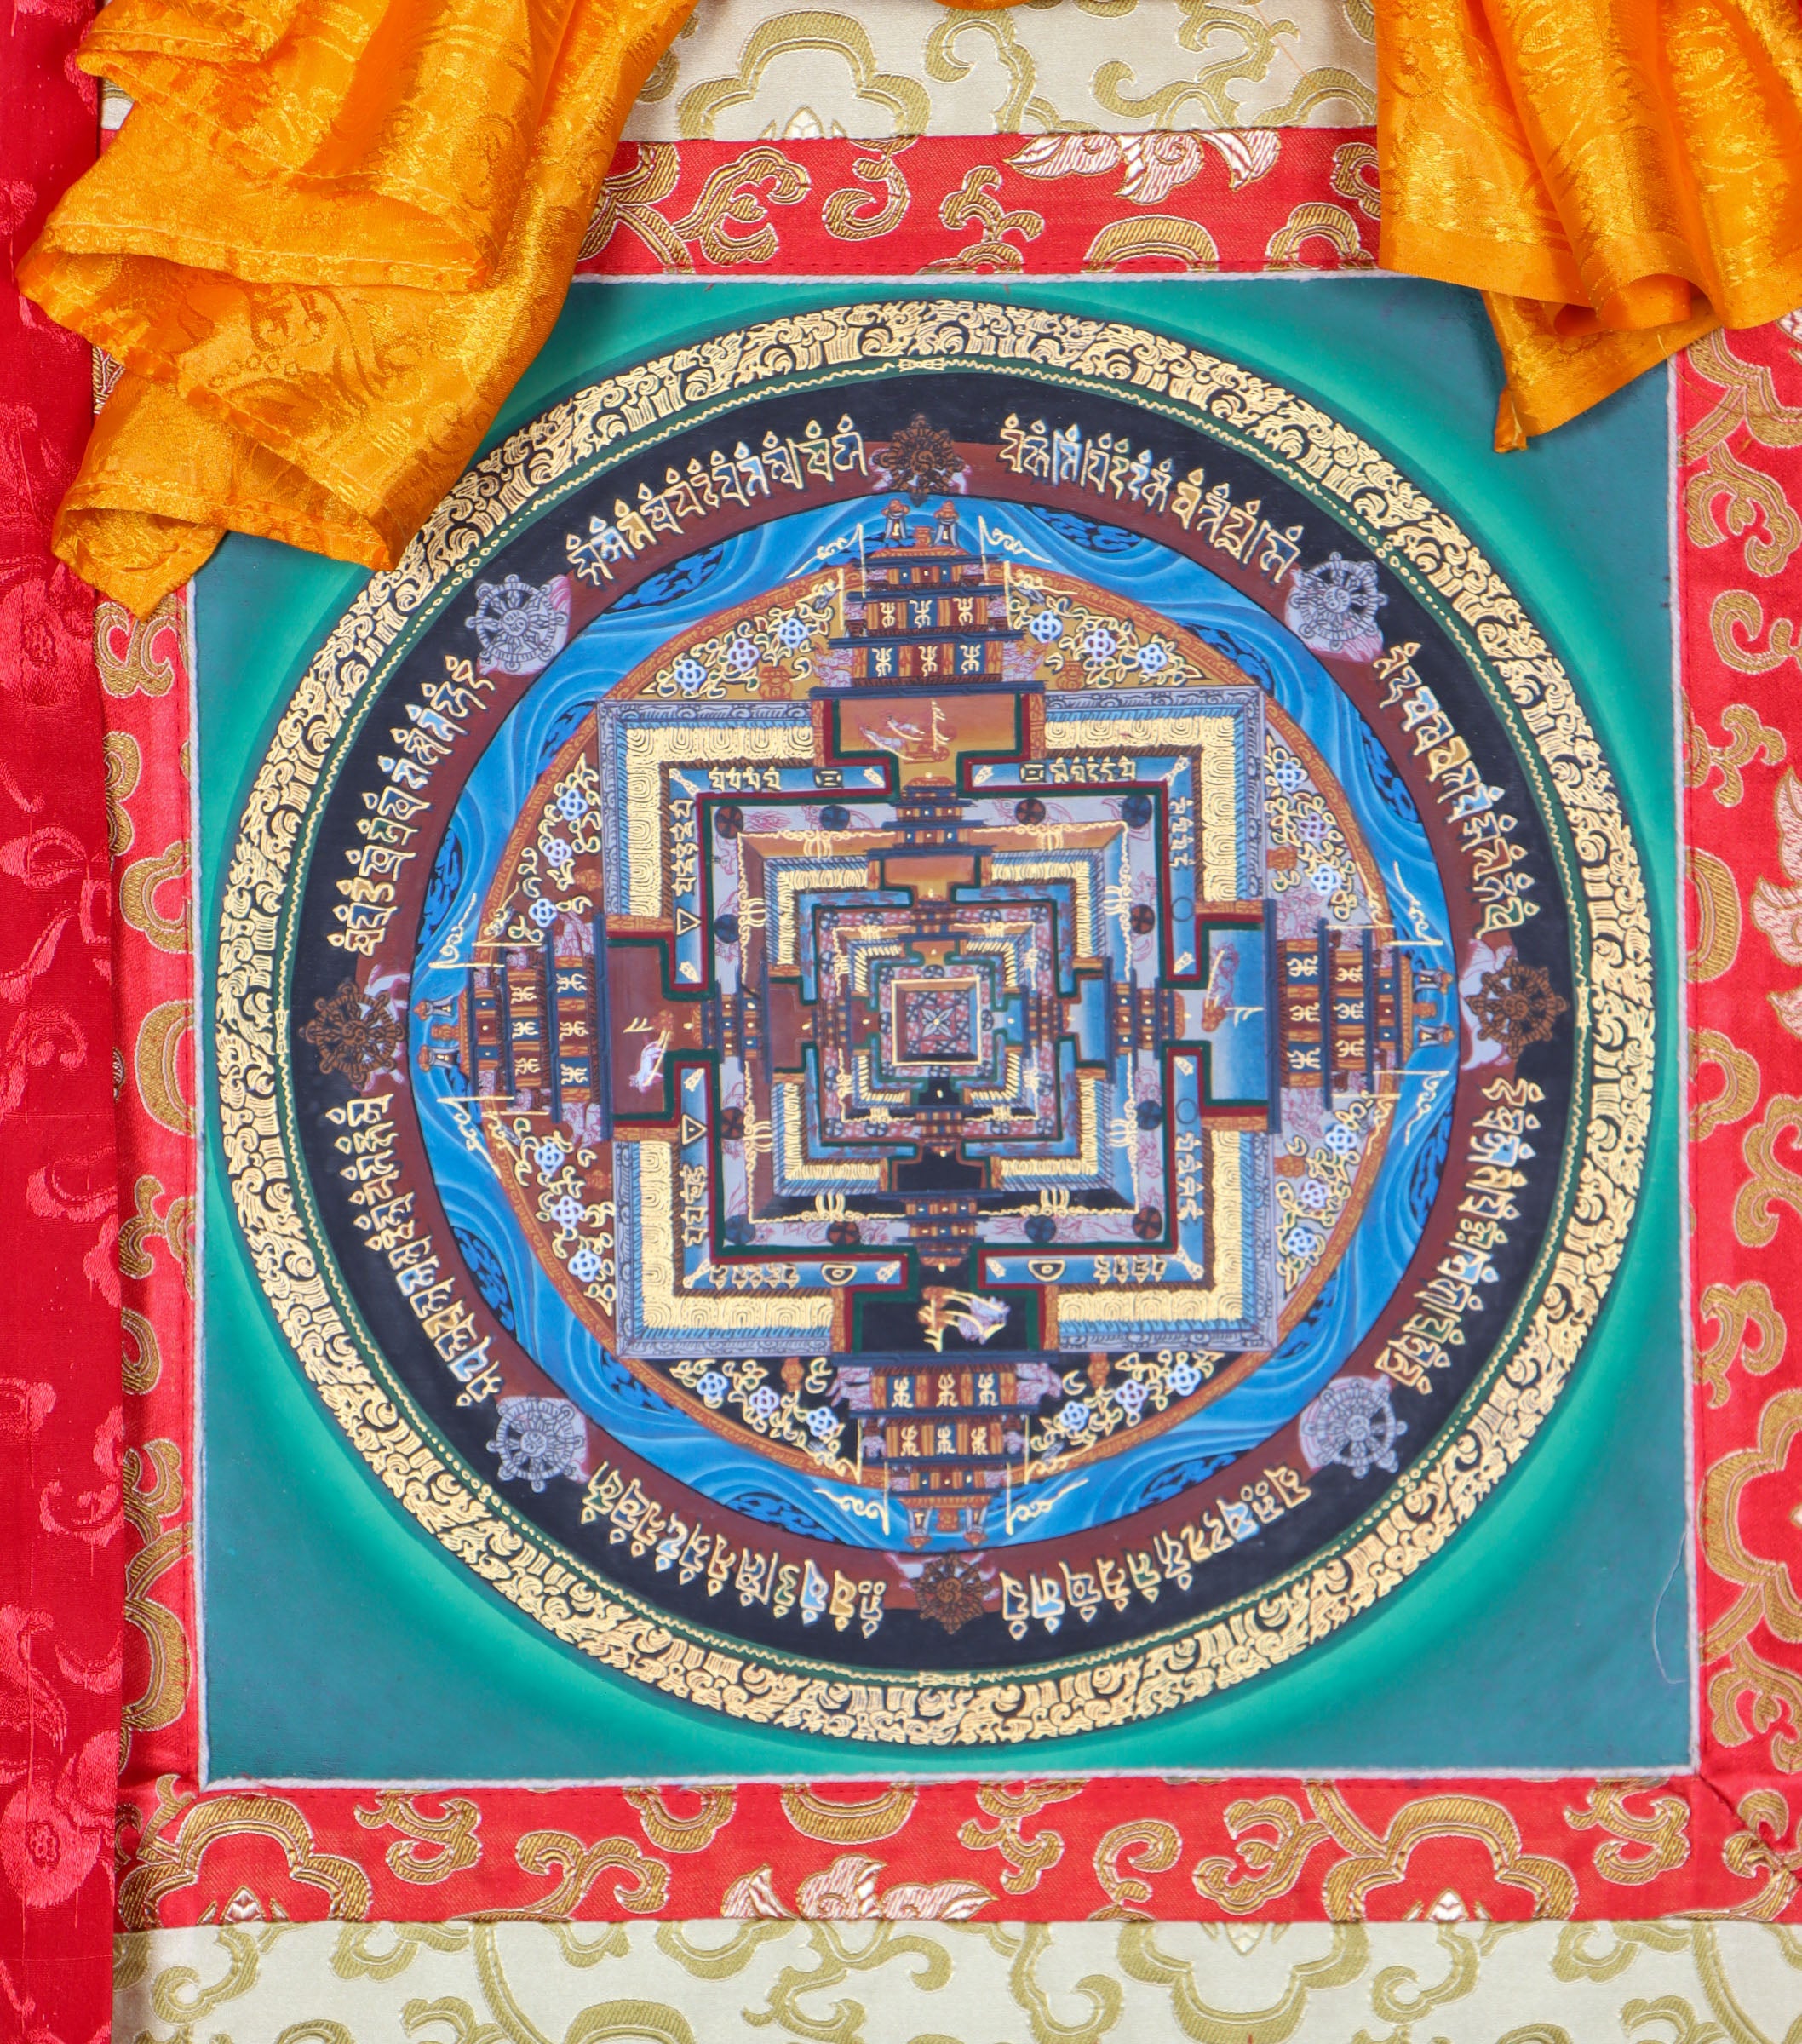 Kalachakra Mandala Brocade Thangka Painting for meditation and contemplation.